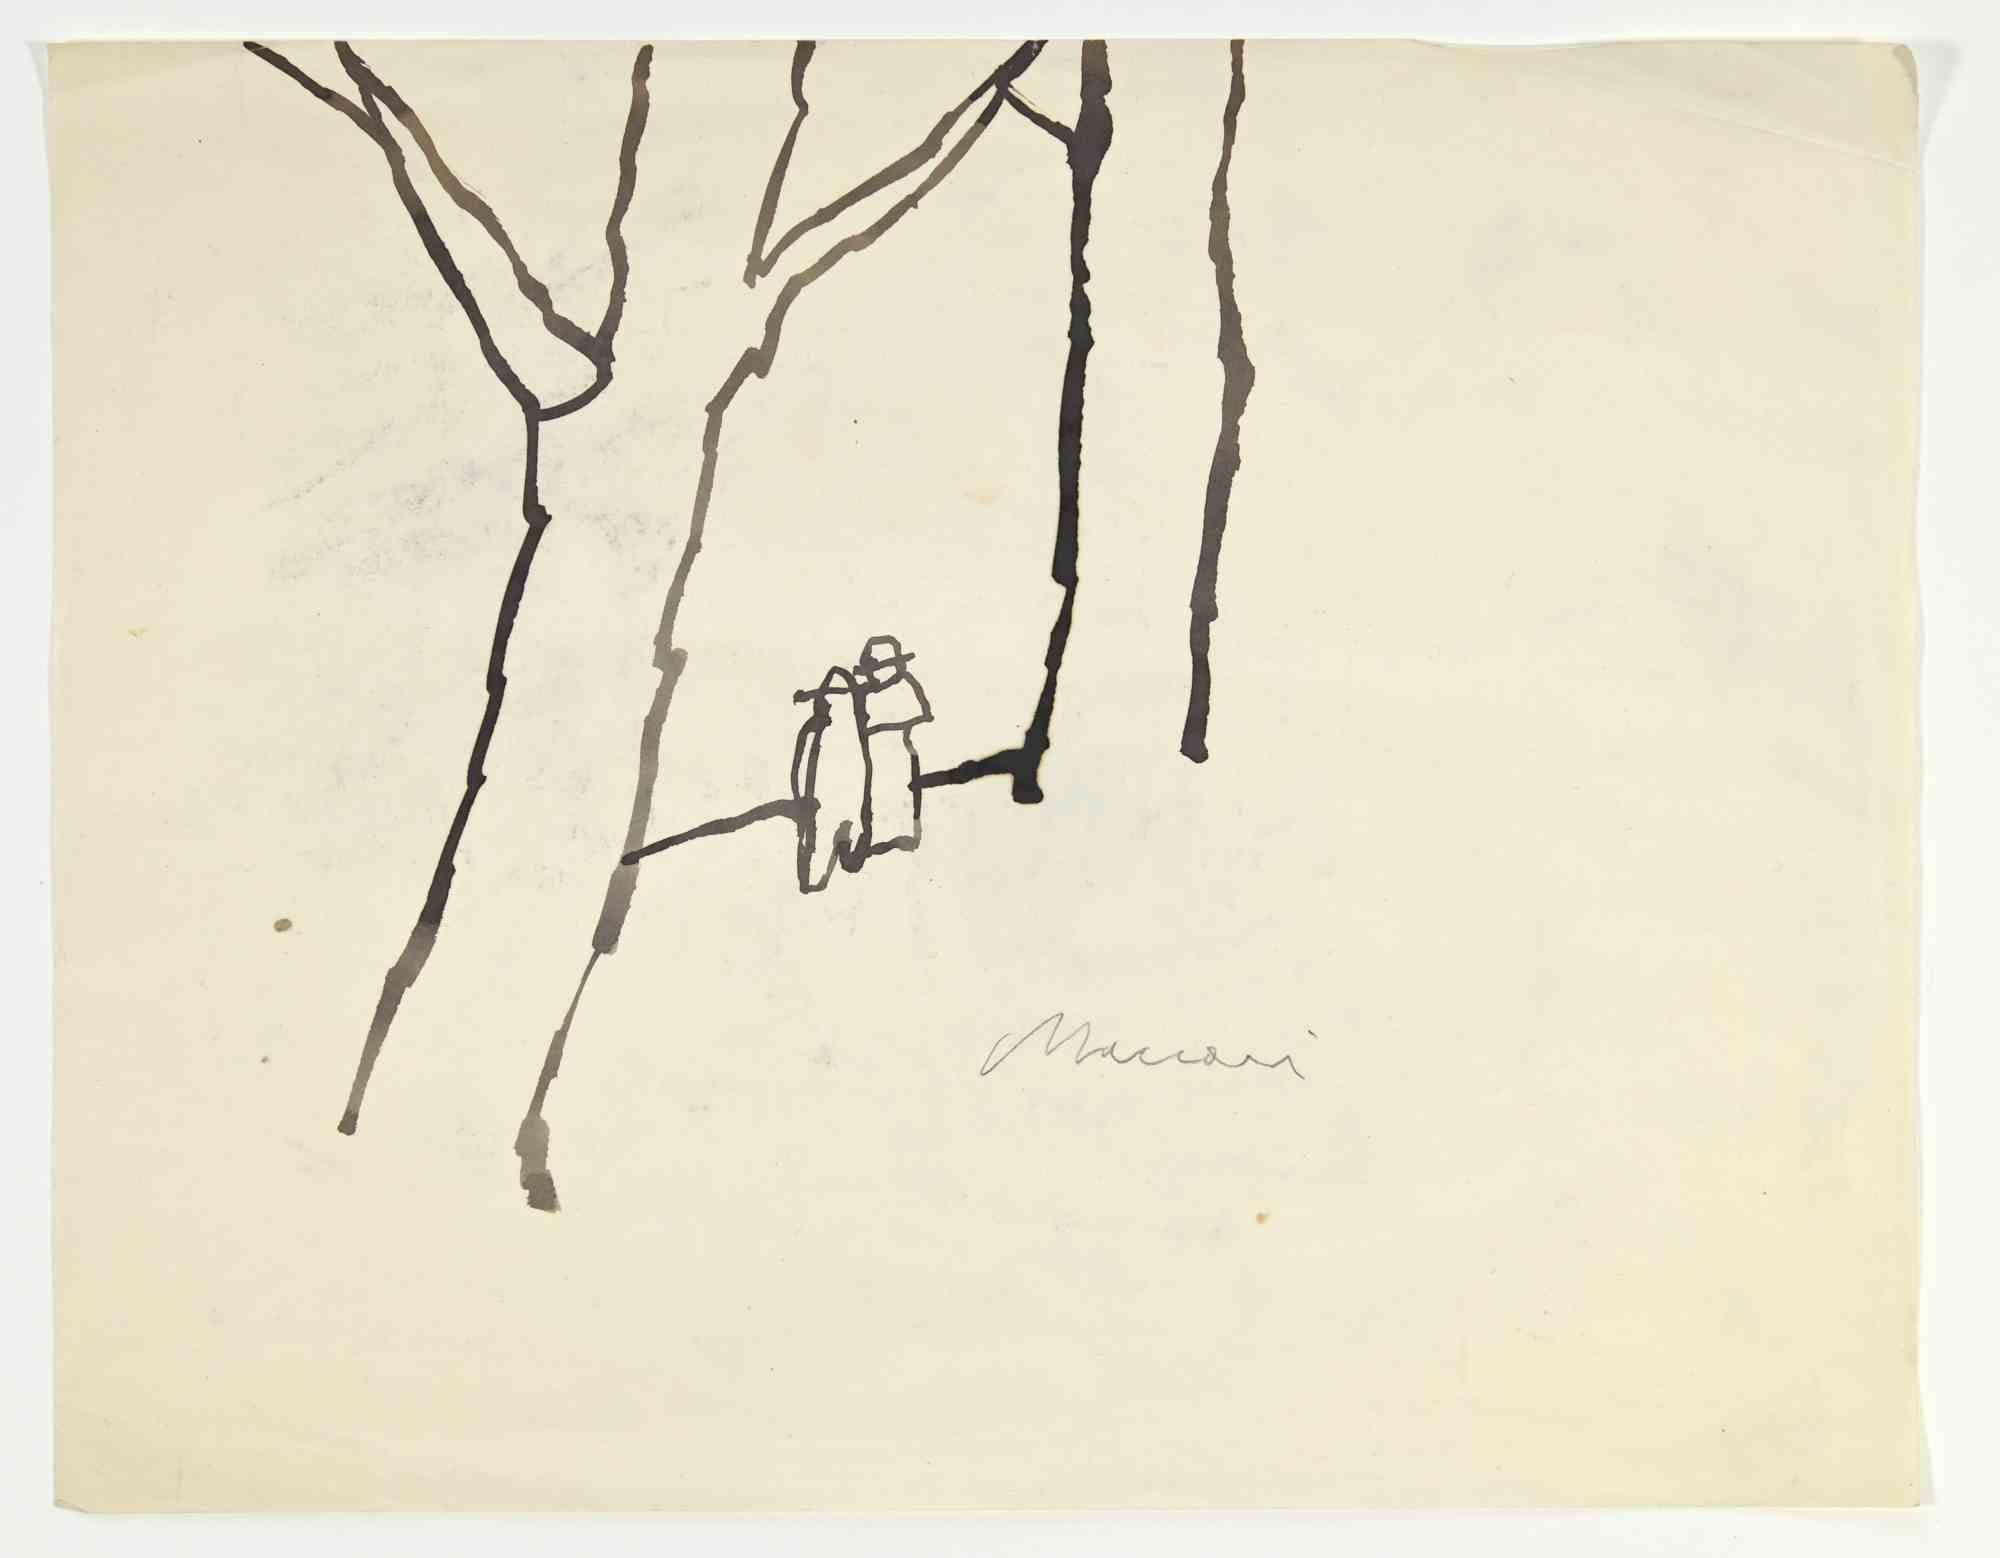 Into the Woods ist eine Aquarell-Zeichnung von Mino Maccari  (1924-1989) in den 1960er Jahren.

Handsigniert auf der Unterseite.

Guter Zustand mit leichten Stockflecken und Falten.

Mino Maccari (Siena, 1924-Rom, 16. Juni 1989) war ein